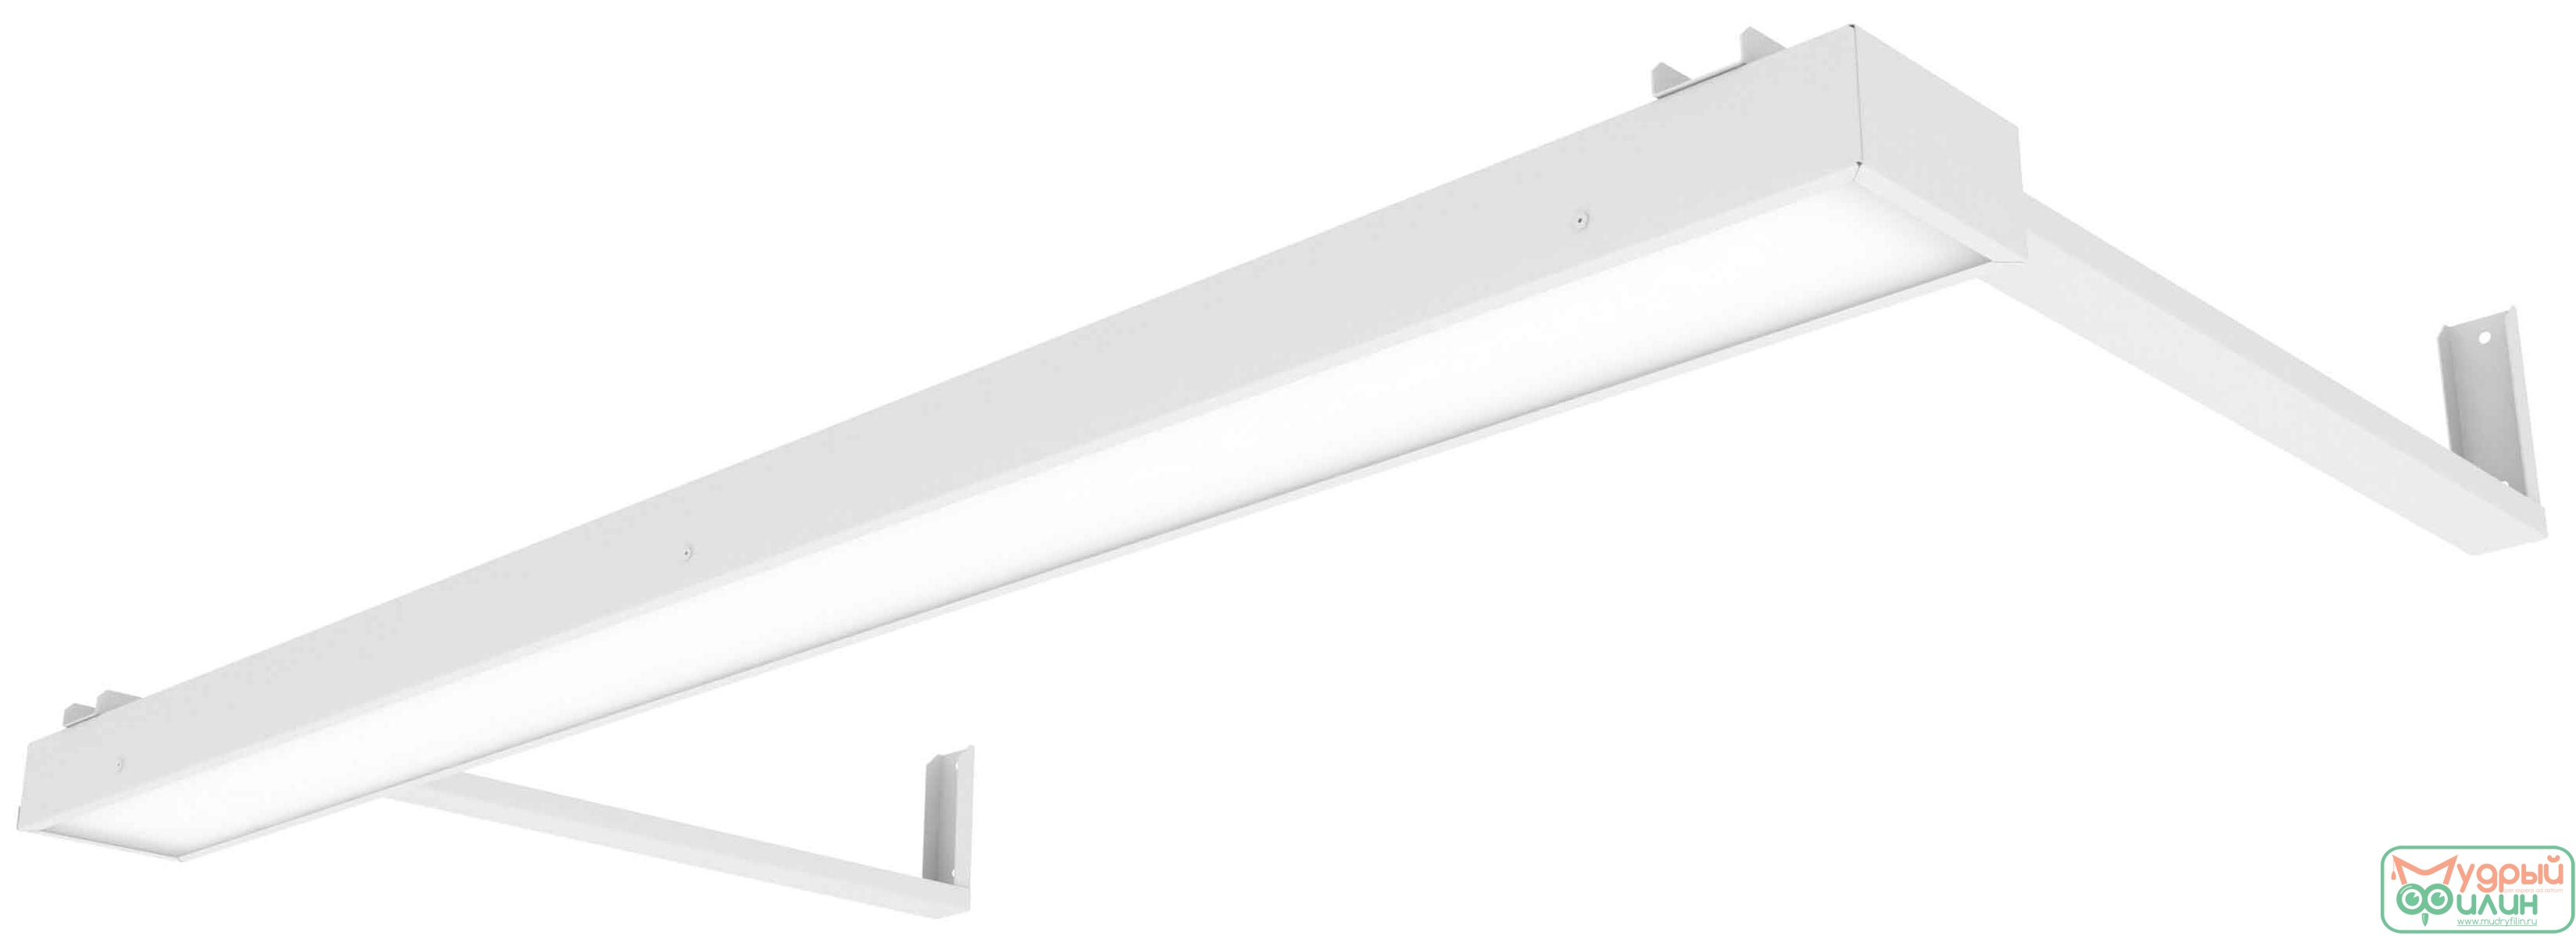 Светодиодный светильник ДПО Премиум для школьных досок, 3950К, Вартон, Цвет Белый - 1